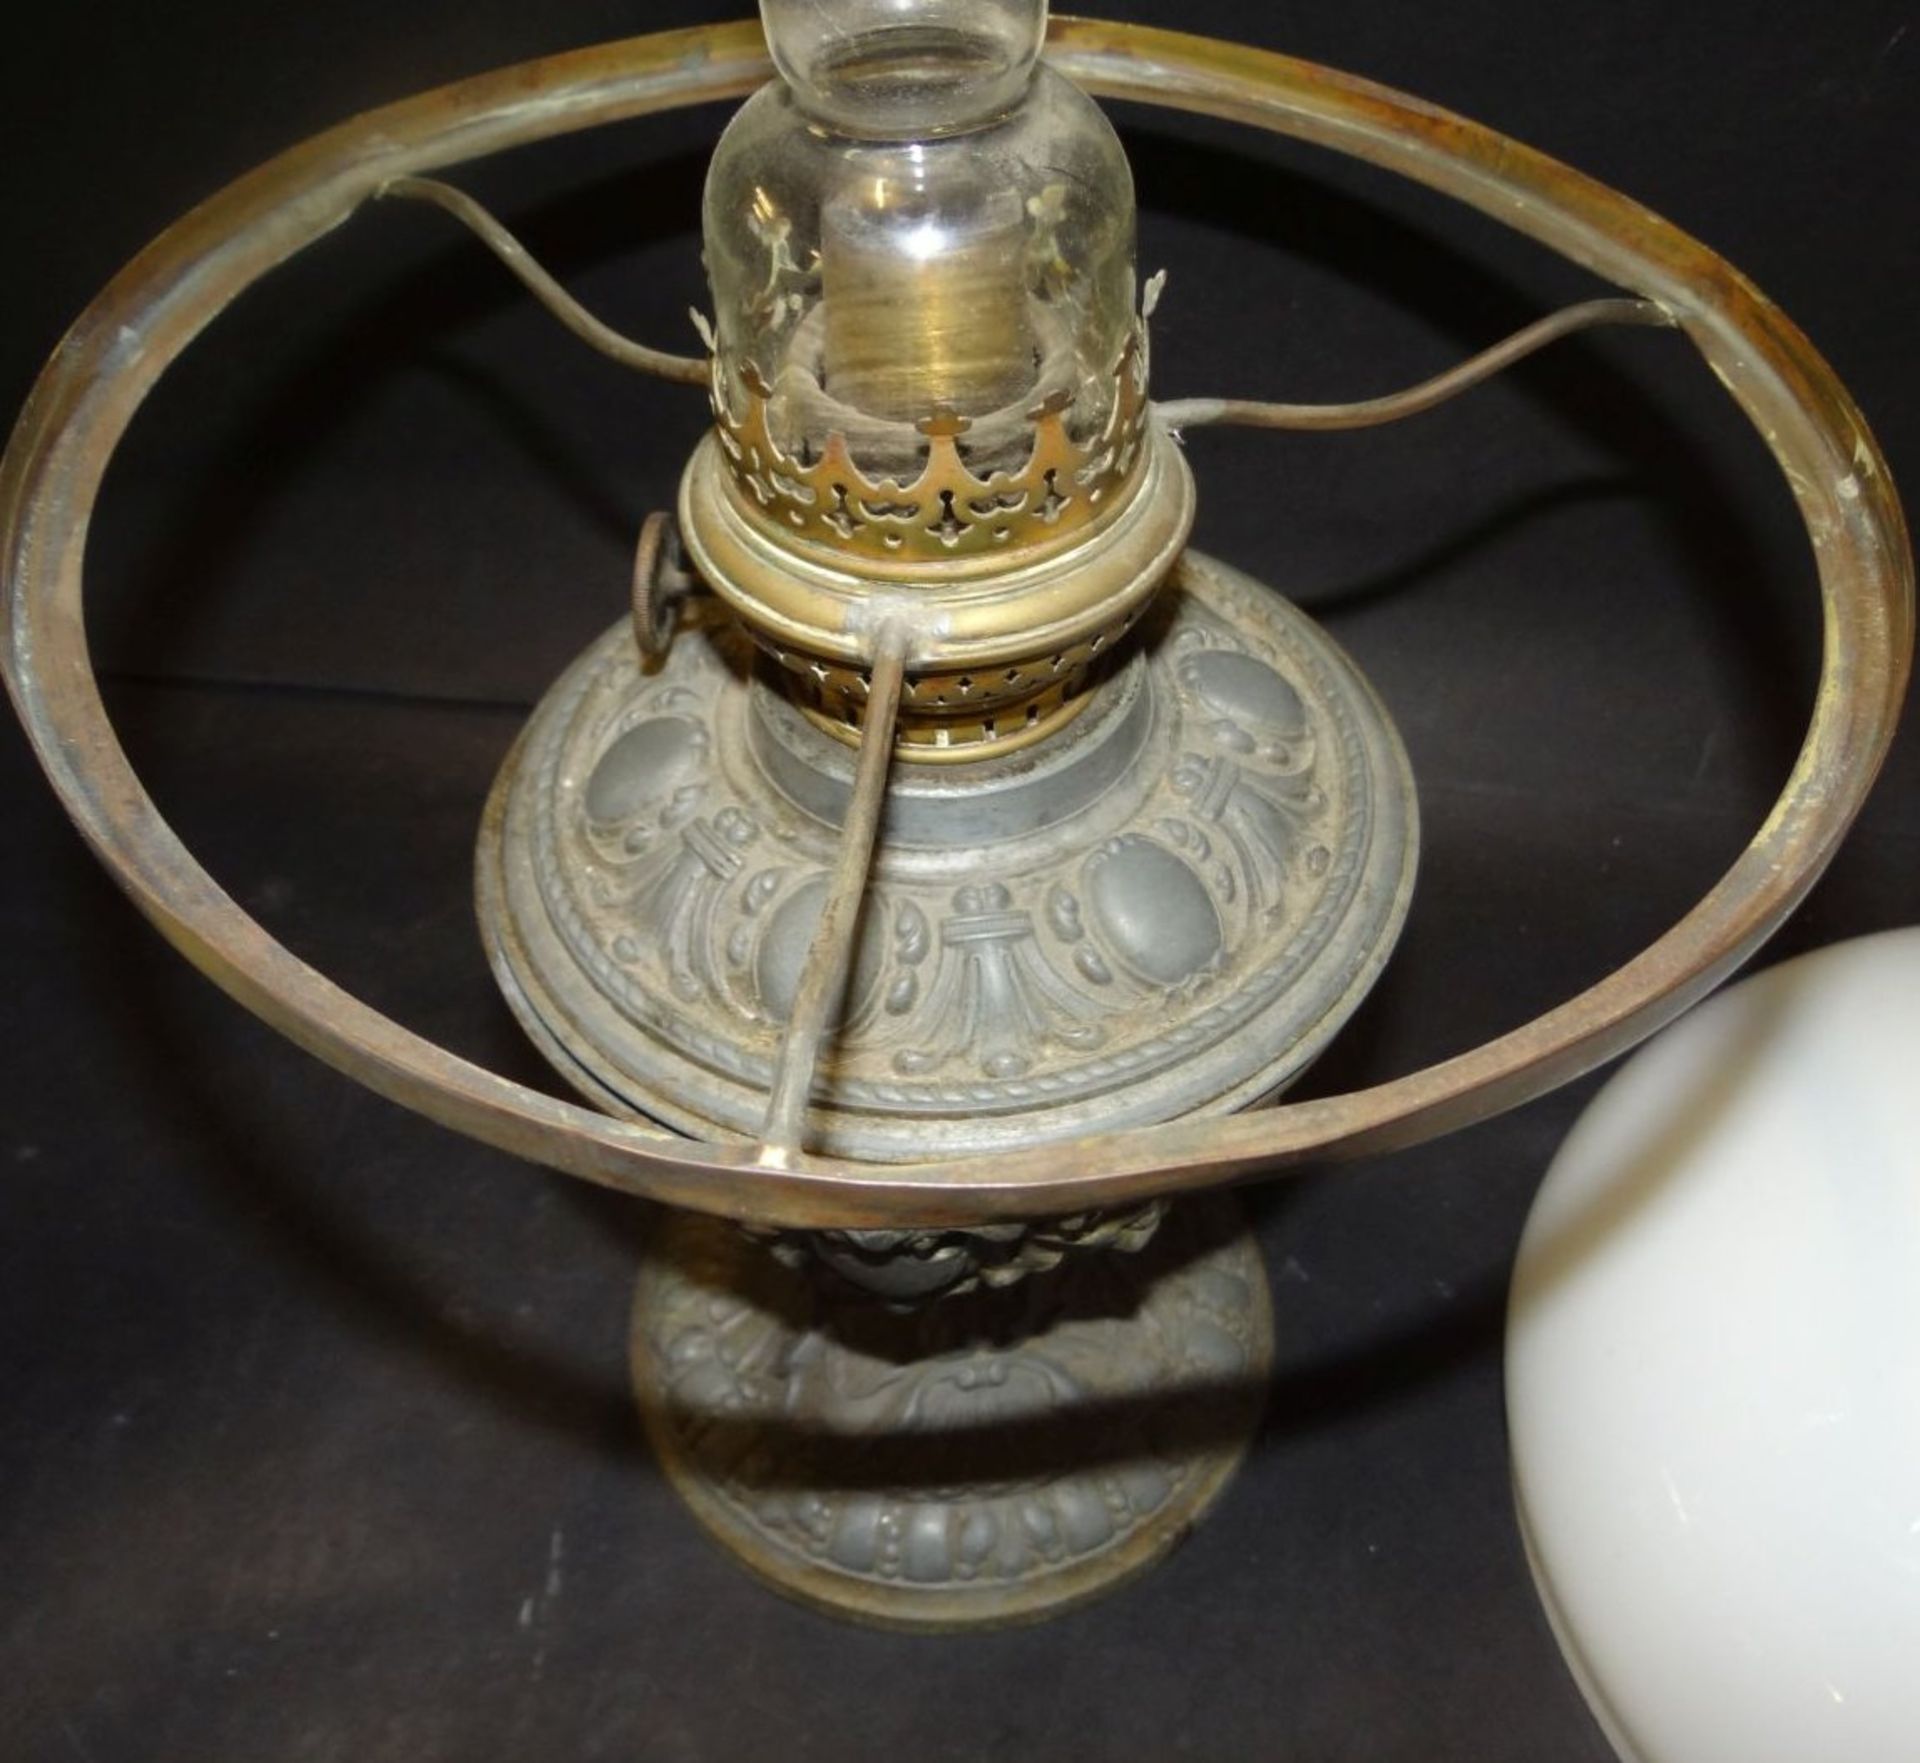 Petroleum-Tischlampe mit Zinnstand, weisser Schirm, ein Halter lose, muss wieder angelötet werden, - Bild 3 aus 5